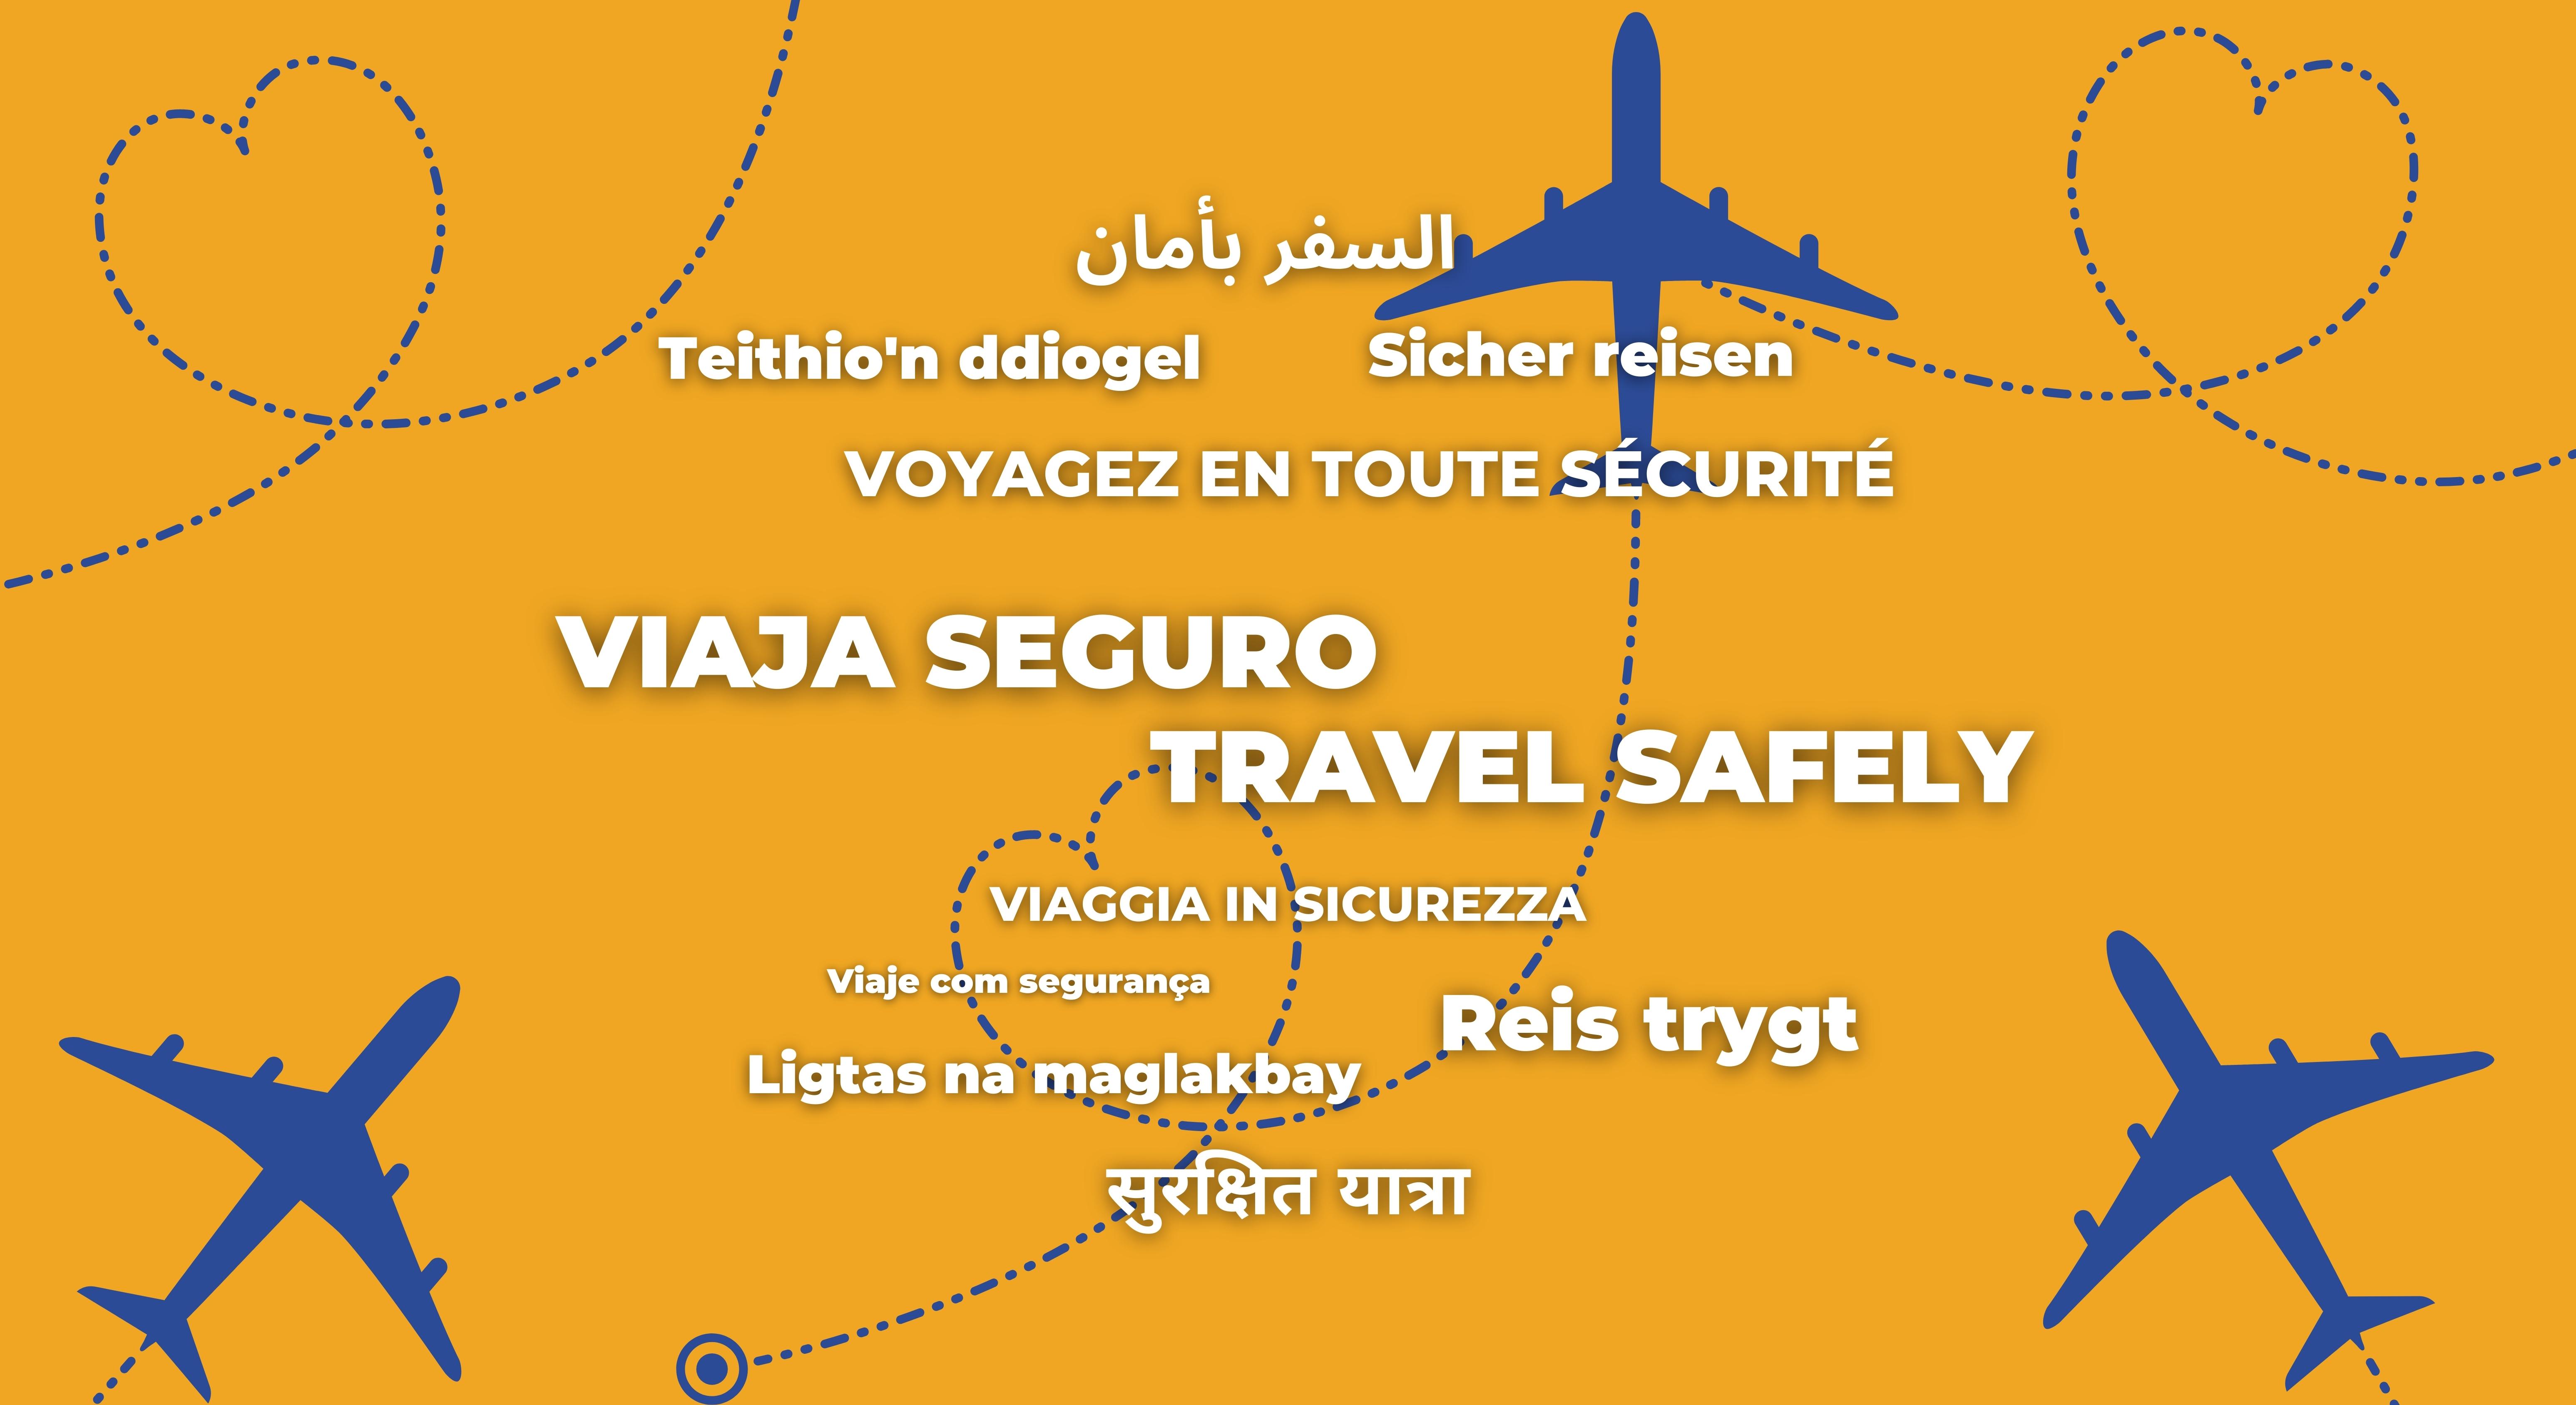 Imagen de viaja seguro en diferentes idiomas